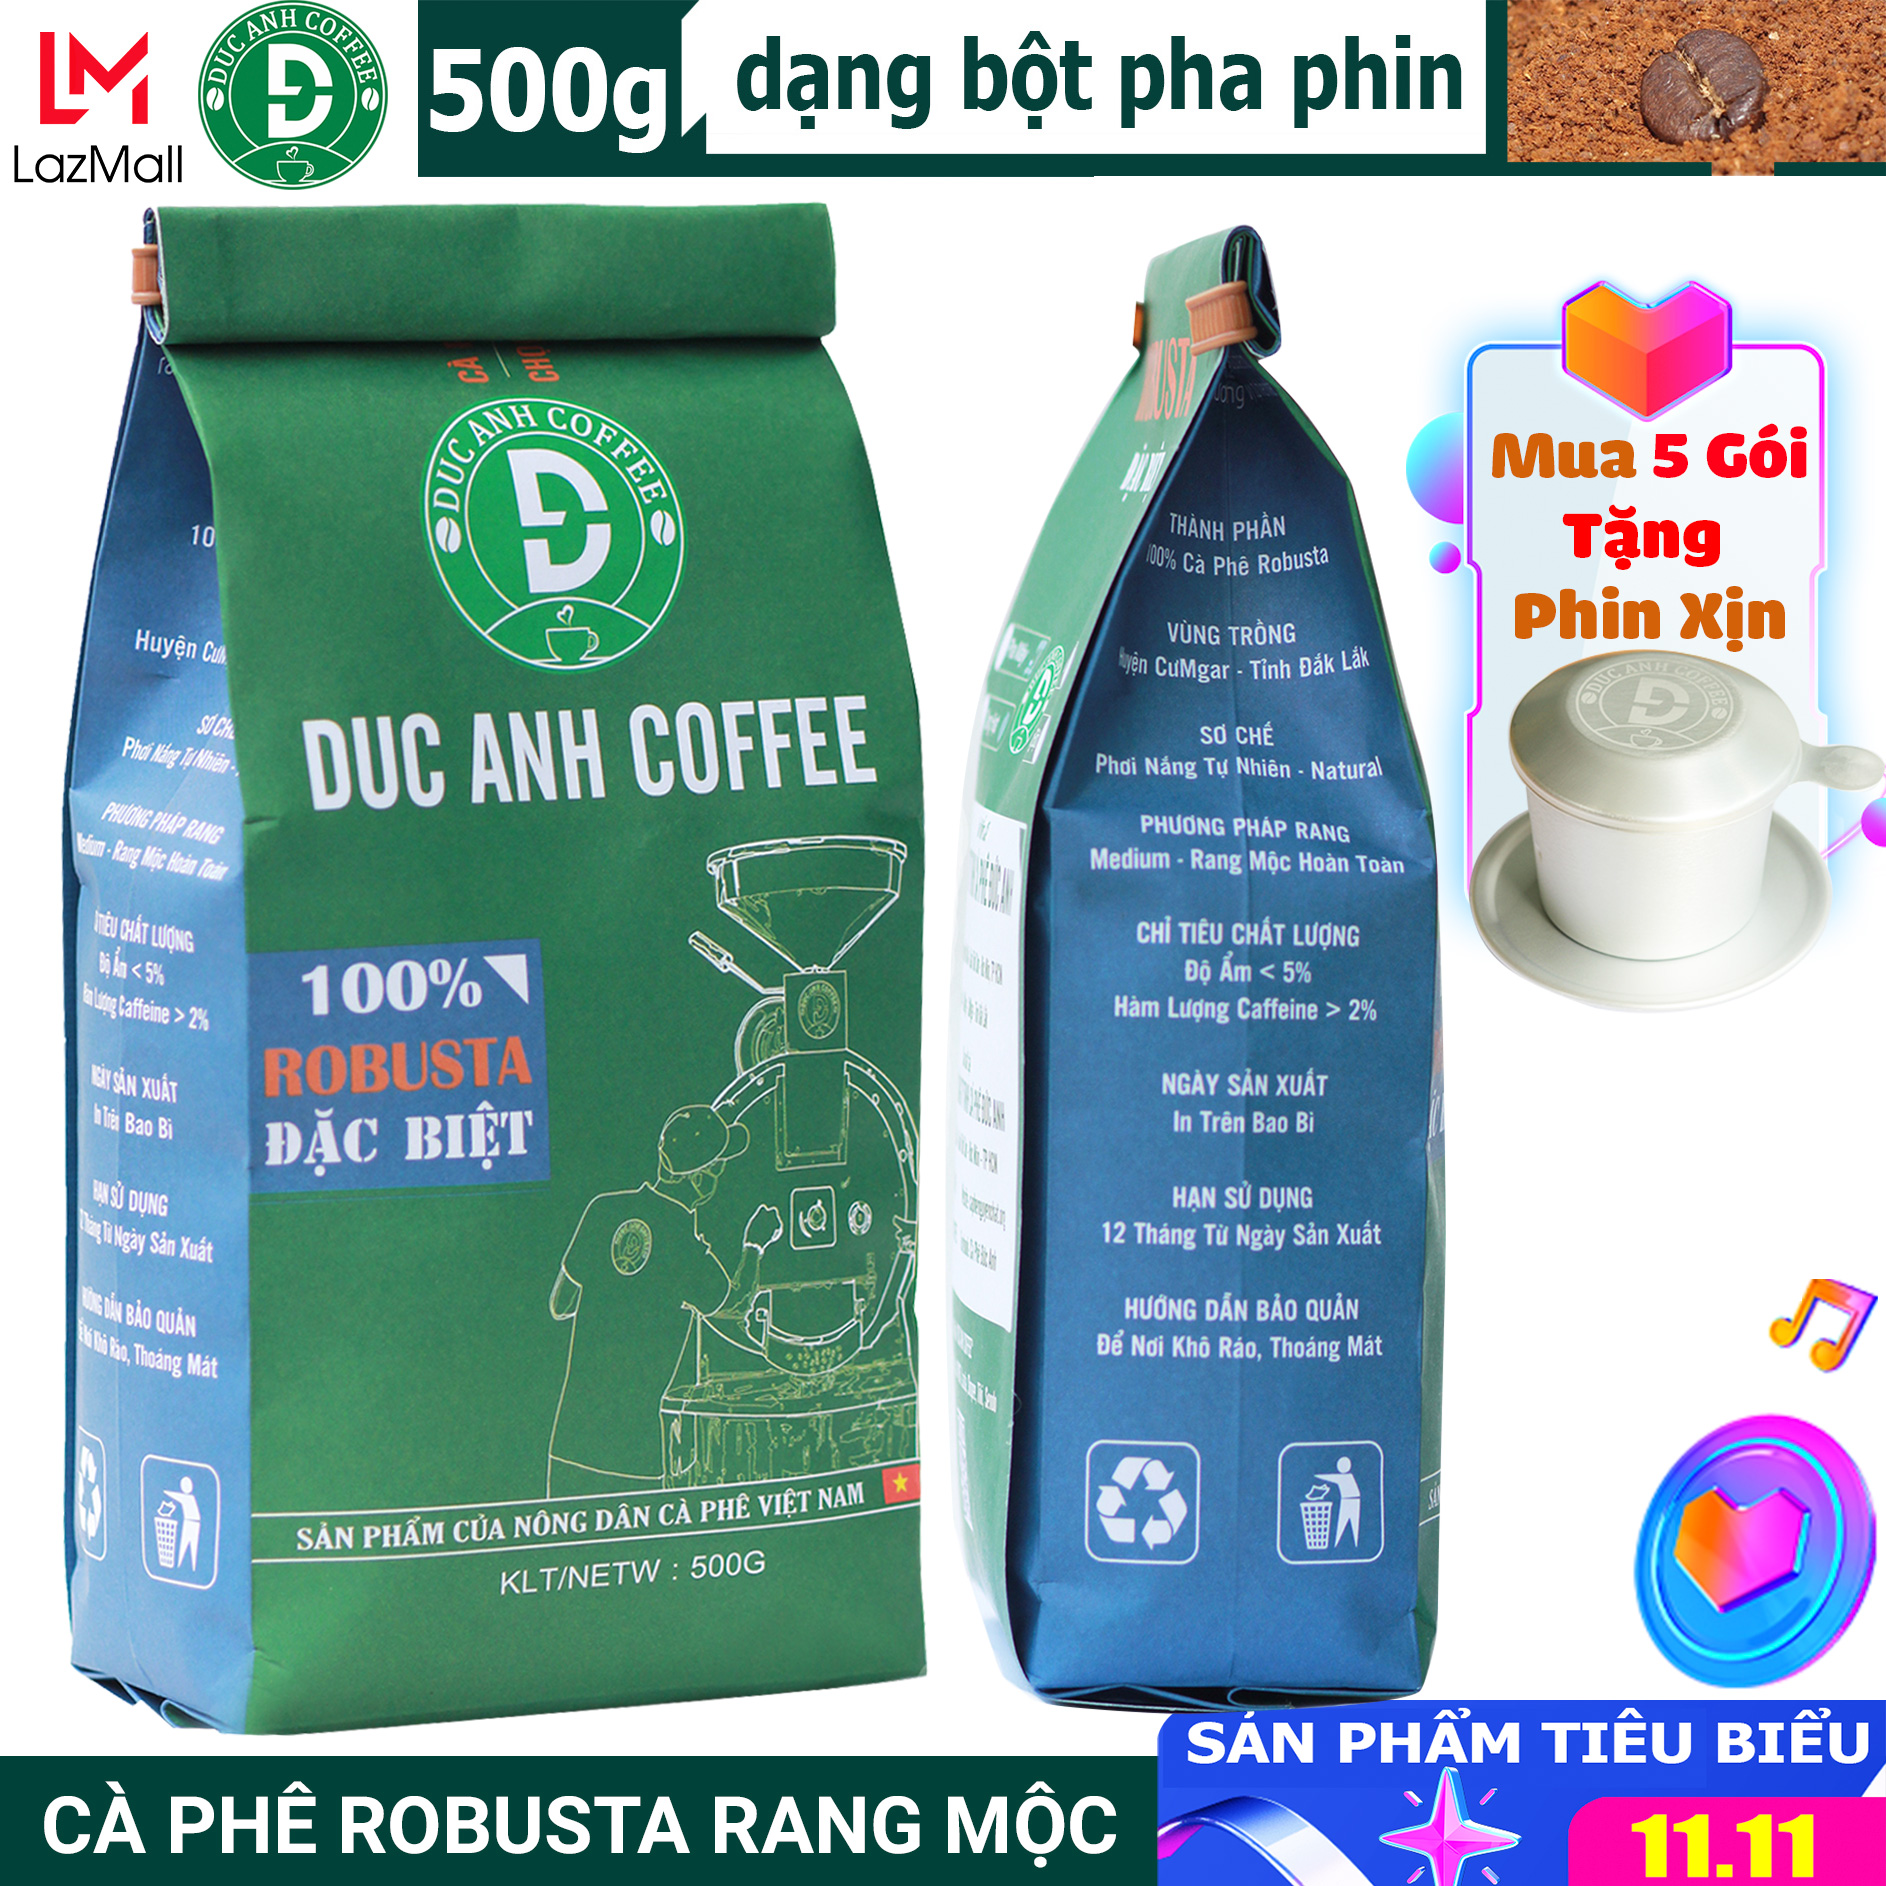 500g Cà phê rang xay Đặc Biệt nguyên chất Pha Phin đậm vị, mạnh, hậu ngọt